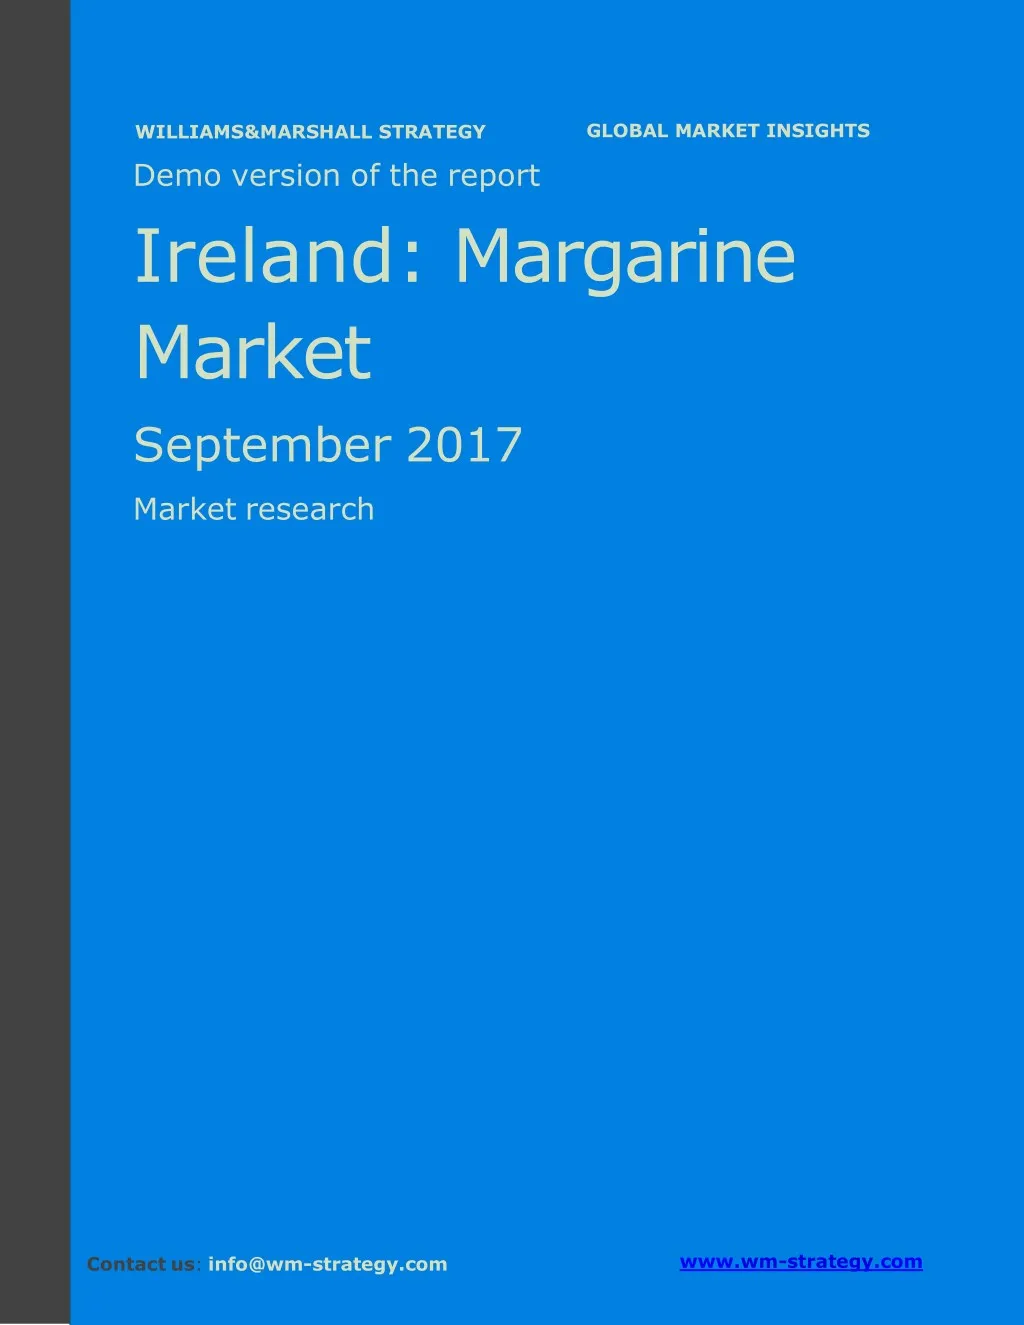 demo version ireland margarine market september